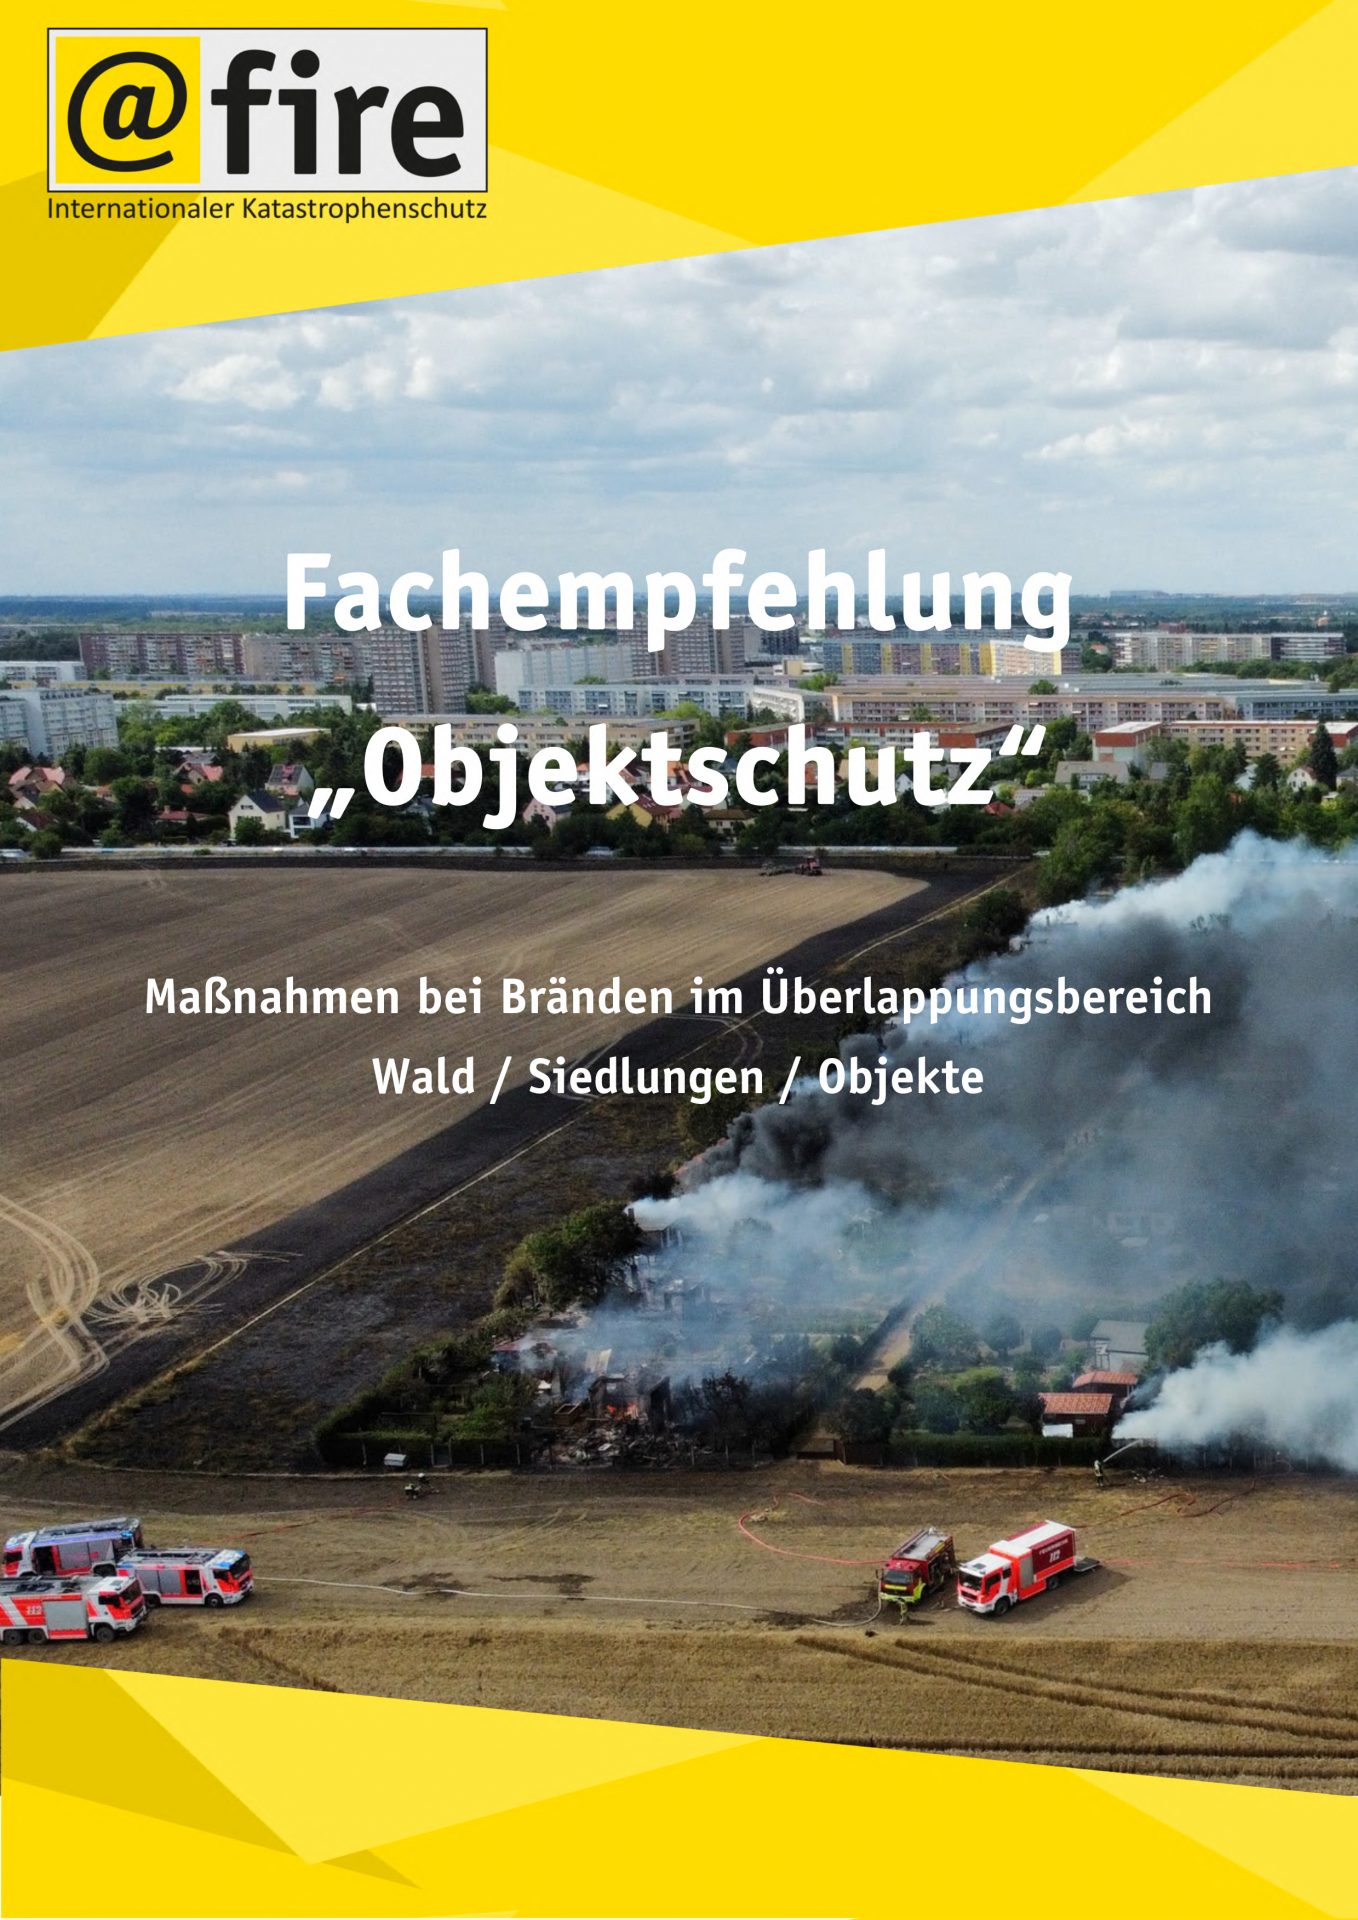 @fire veröffentlicht Fachempfehlung “Objektschutz” zur Bewältigung von Vegetationsbränden im Überlappungsbereich Wald/Siedlungen/Objekte